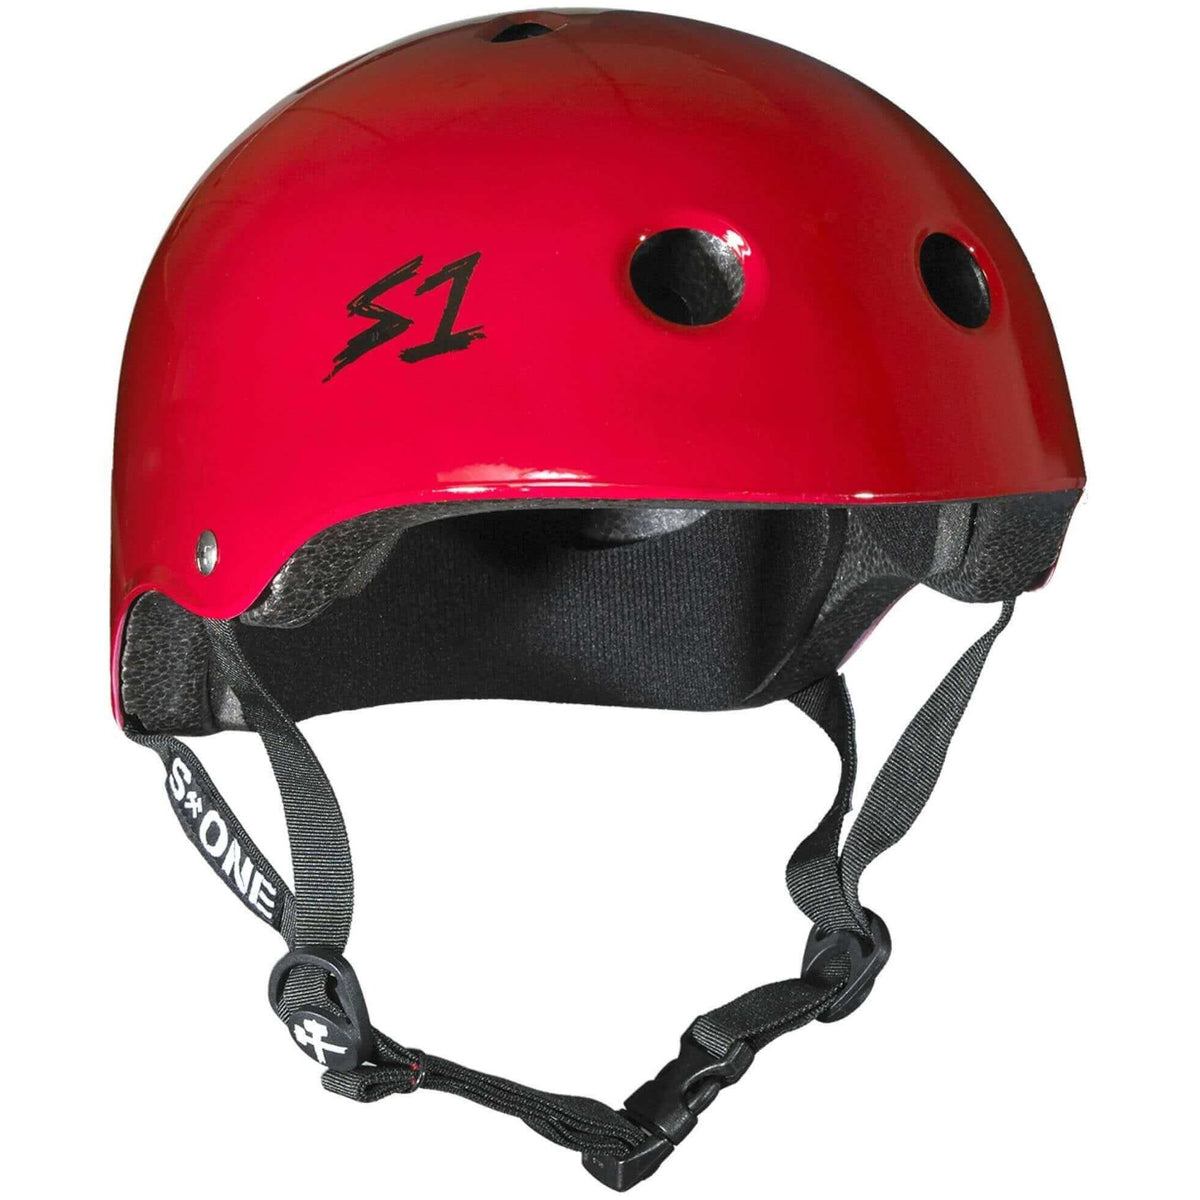 S1 Red Gloss Lifer Helmet